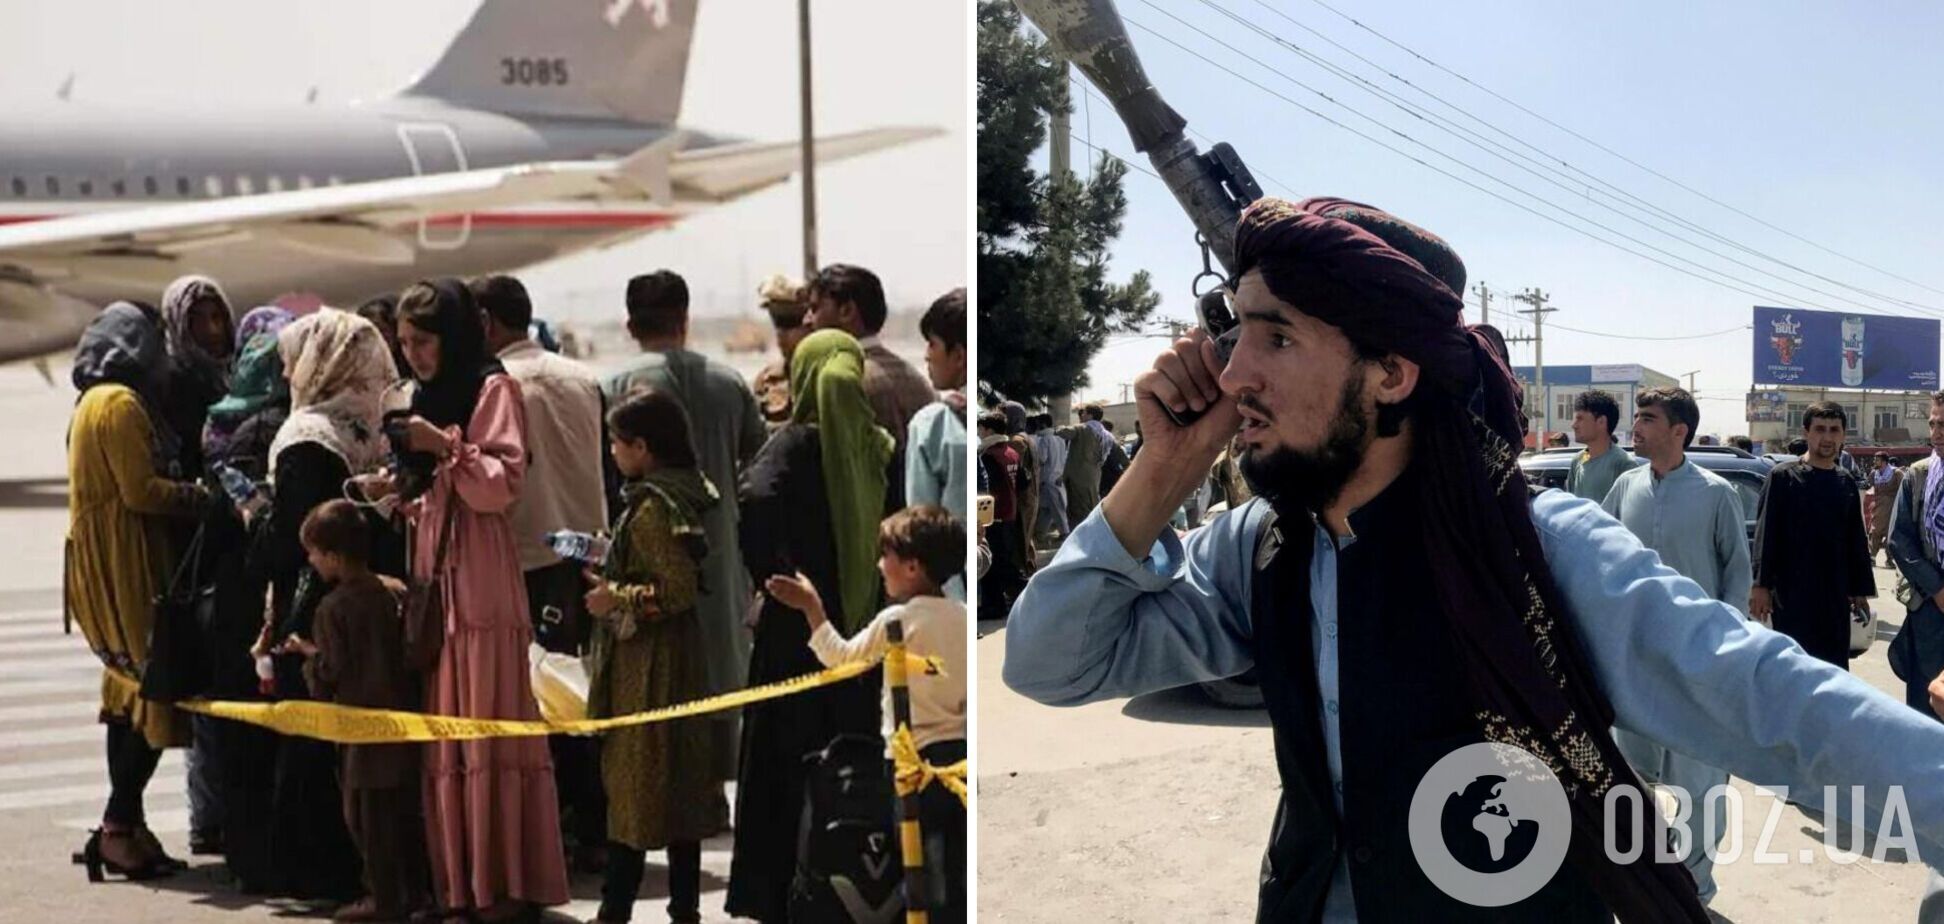 В Кабуле люди штурмуют аэропорт, талибы открыли стрельбу. Видео и все подробности